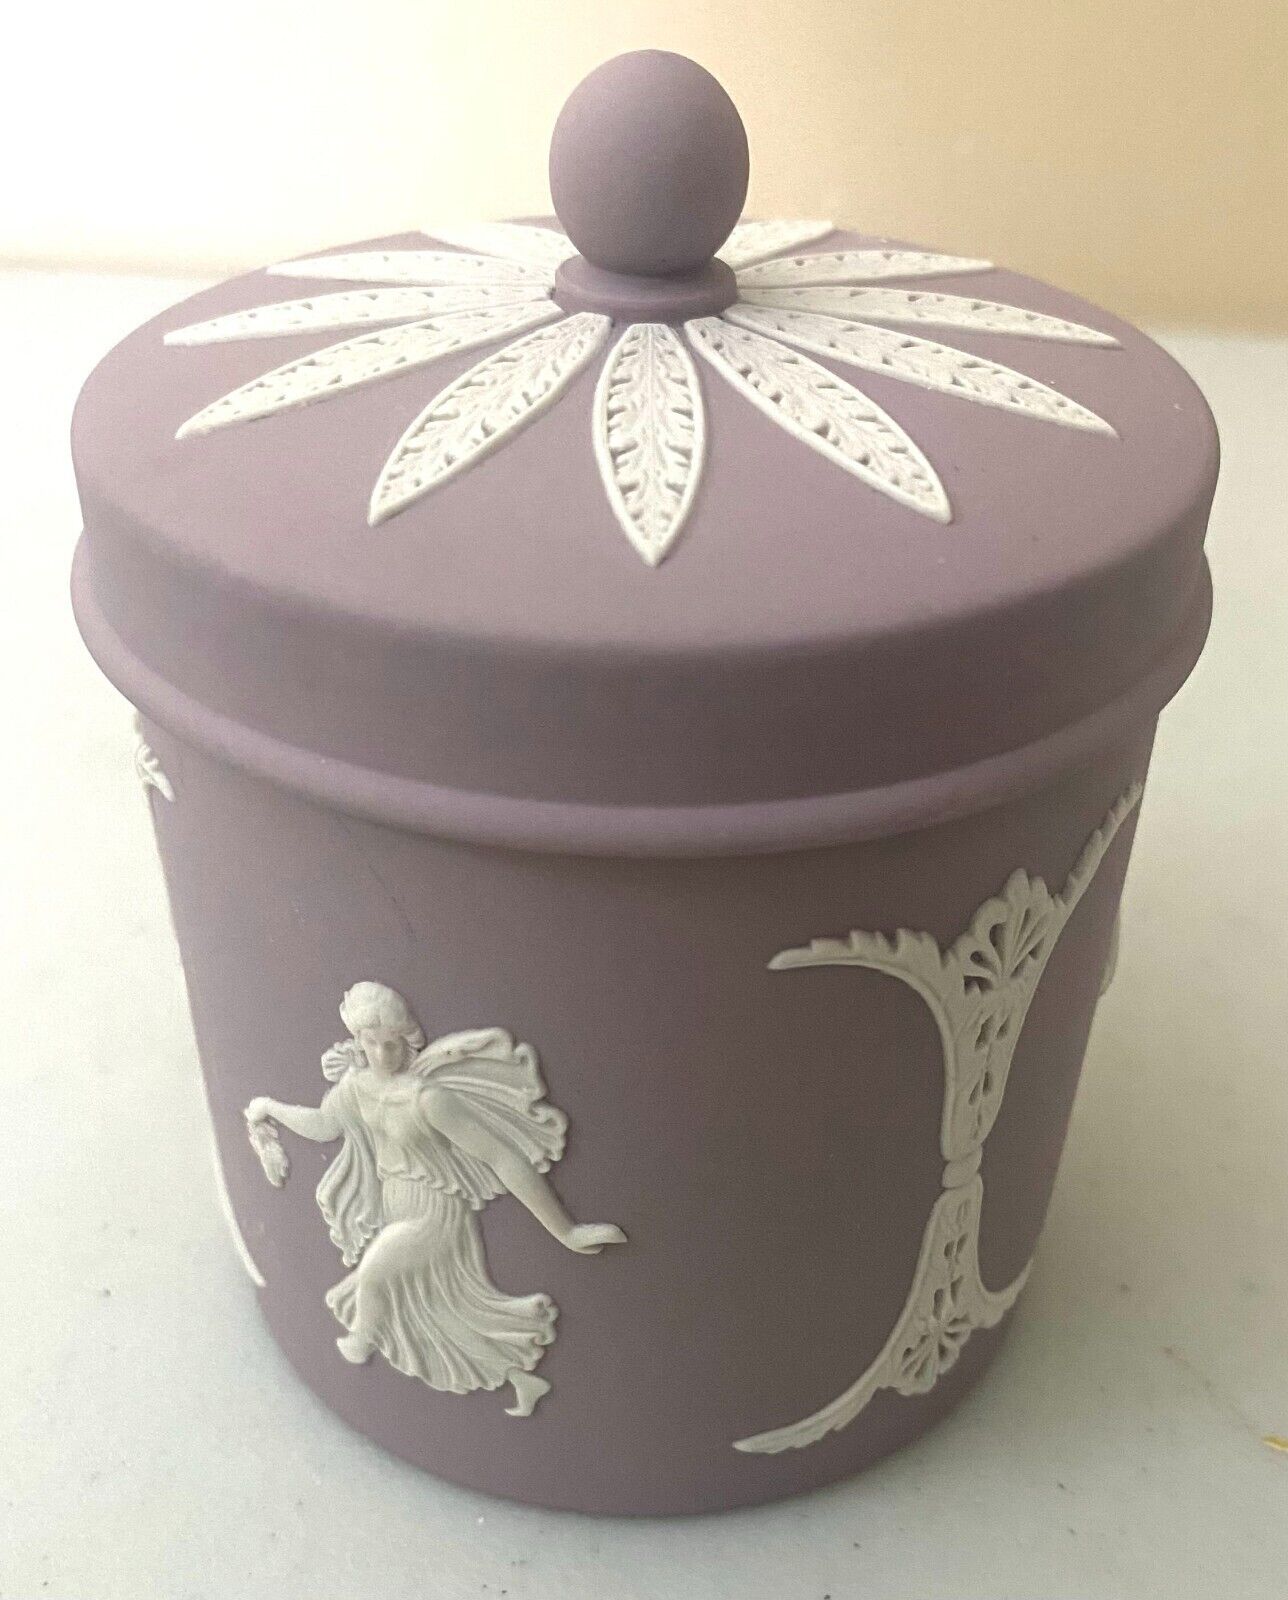 Wedgwood Purple Jasperware Dancing Hours Jar With Finial Lid Round Shaped